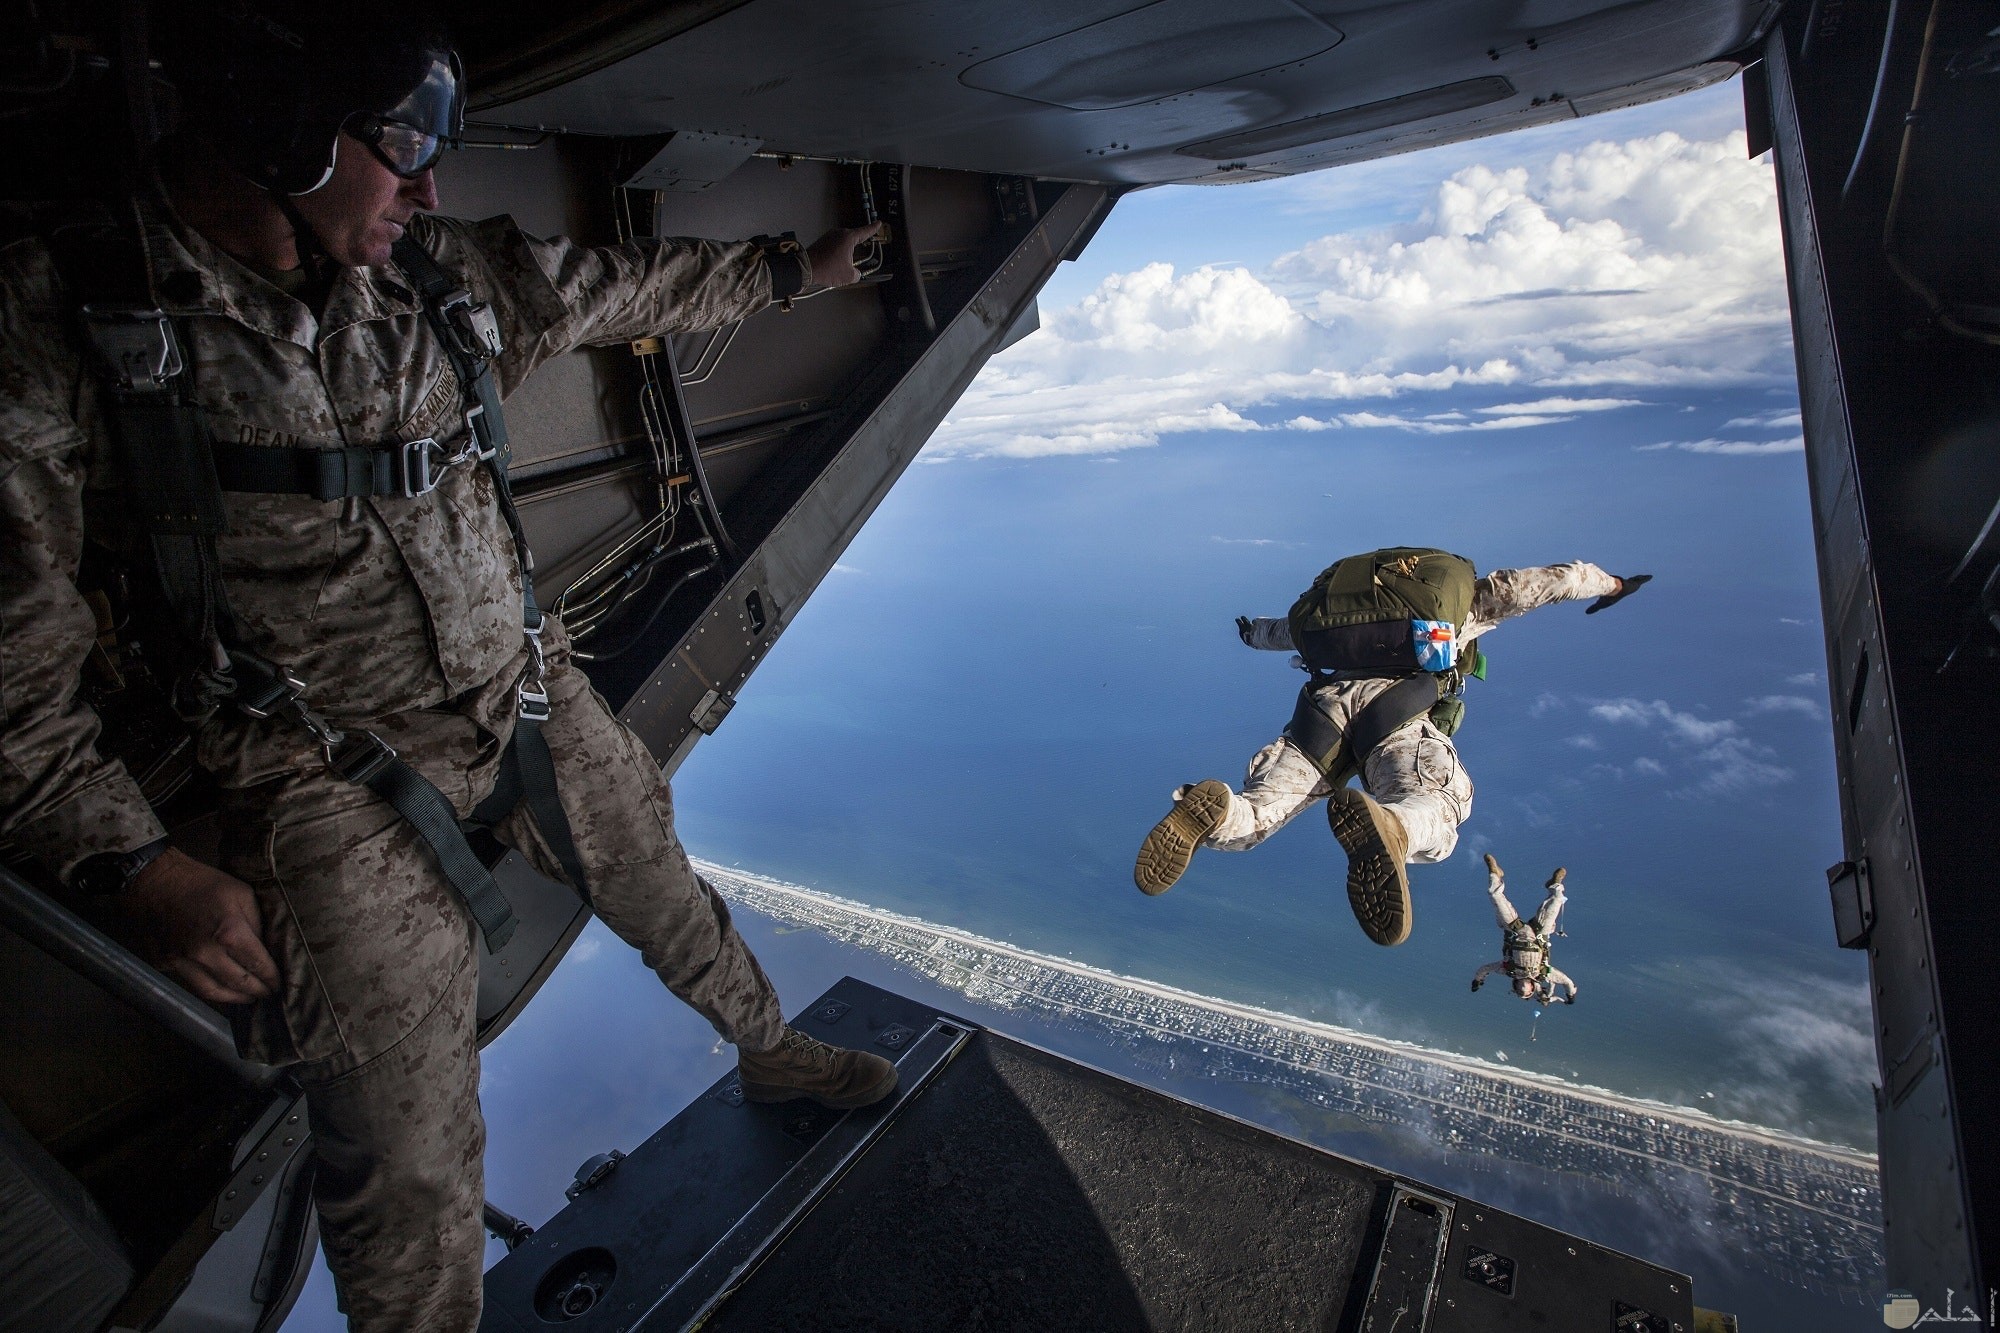 صورة أكشن مميزة لجنود يقفزون من الطائرة في الهواء